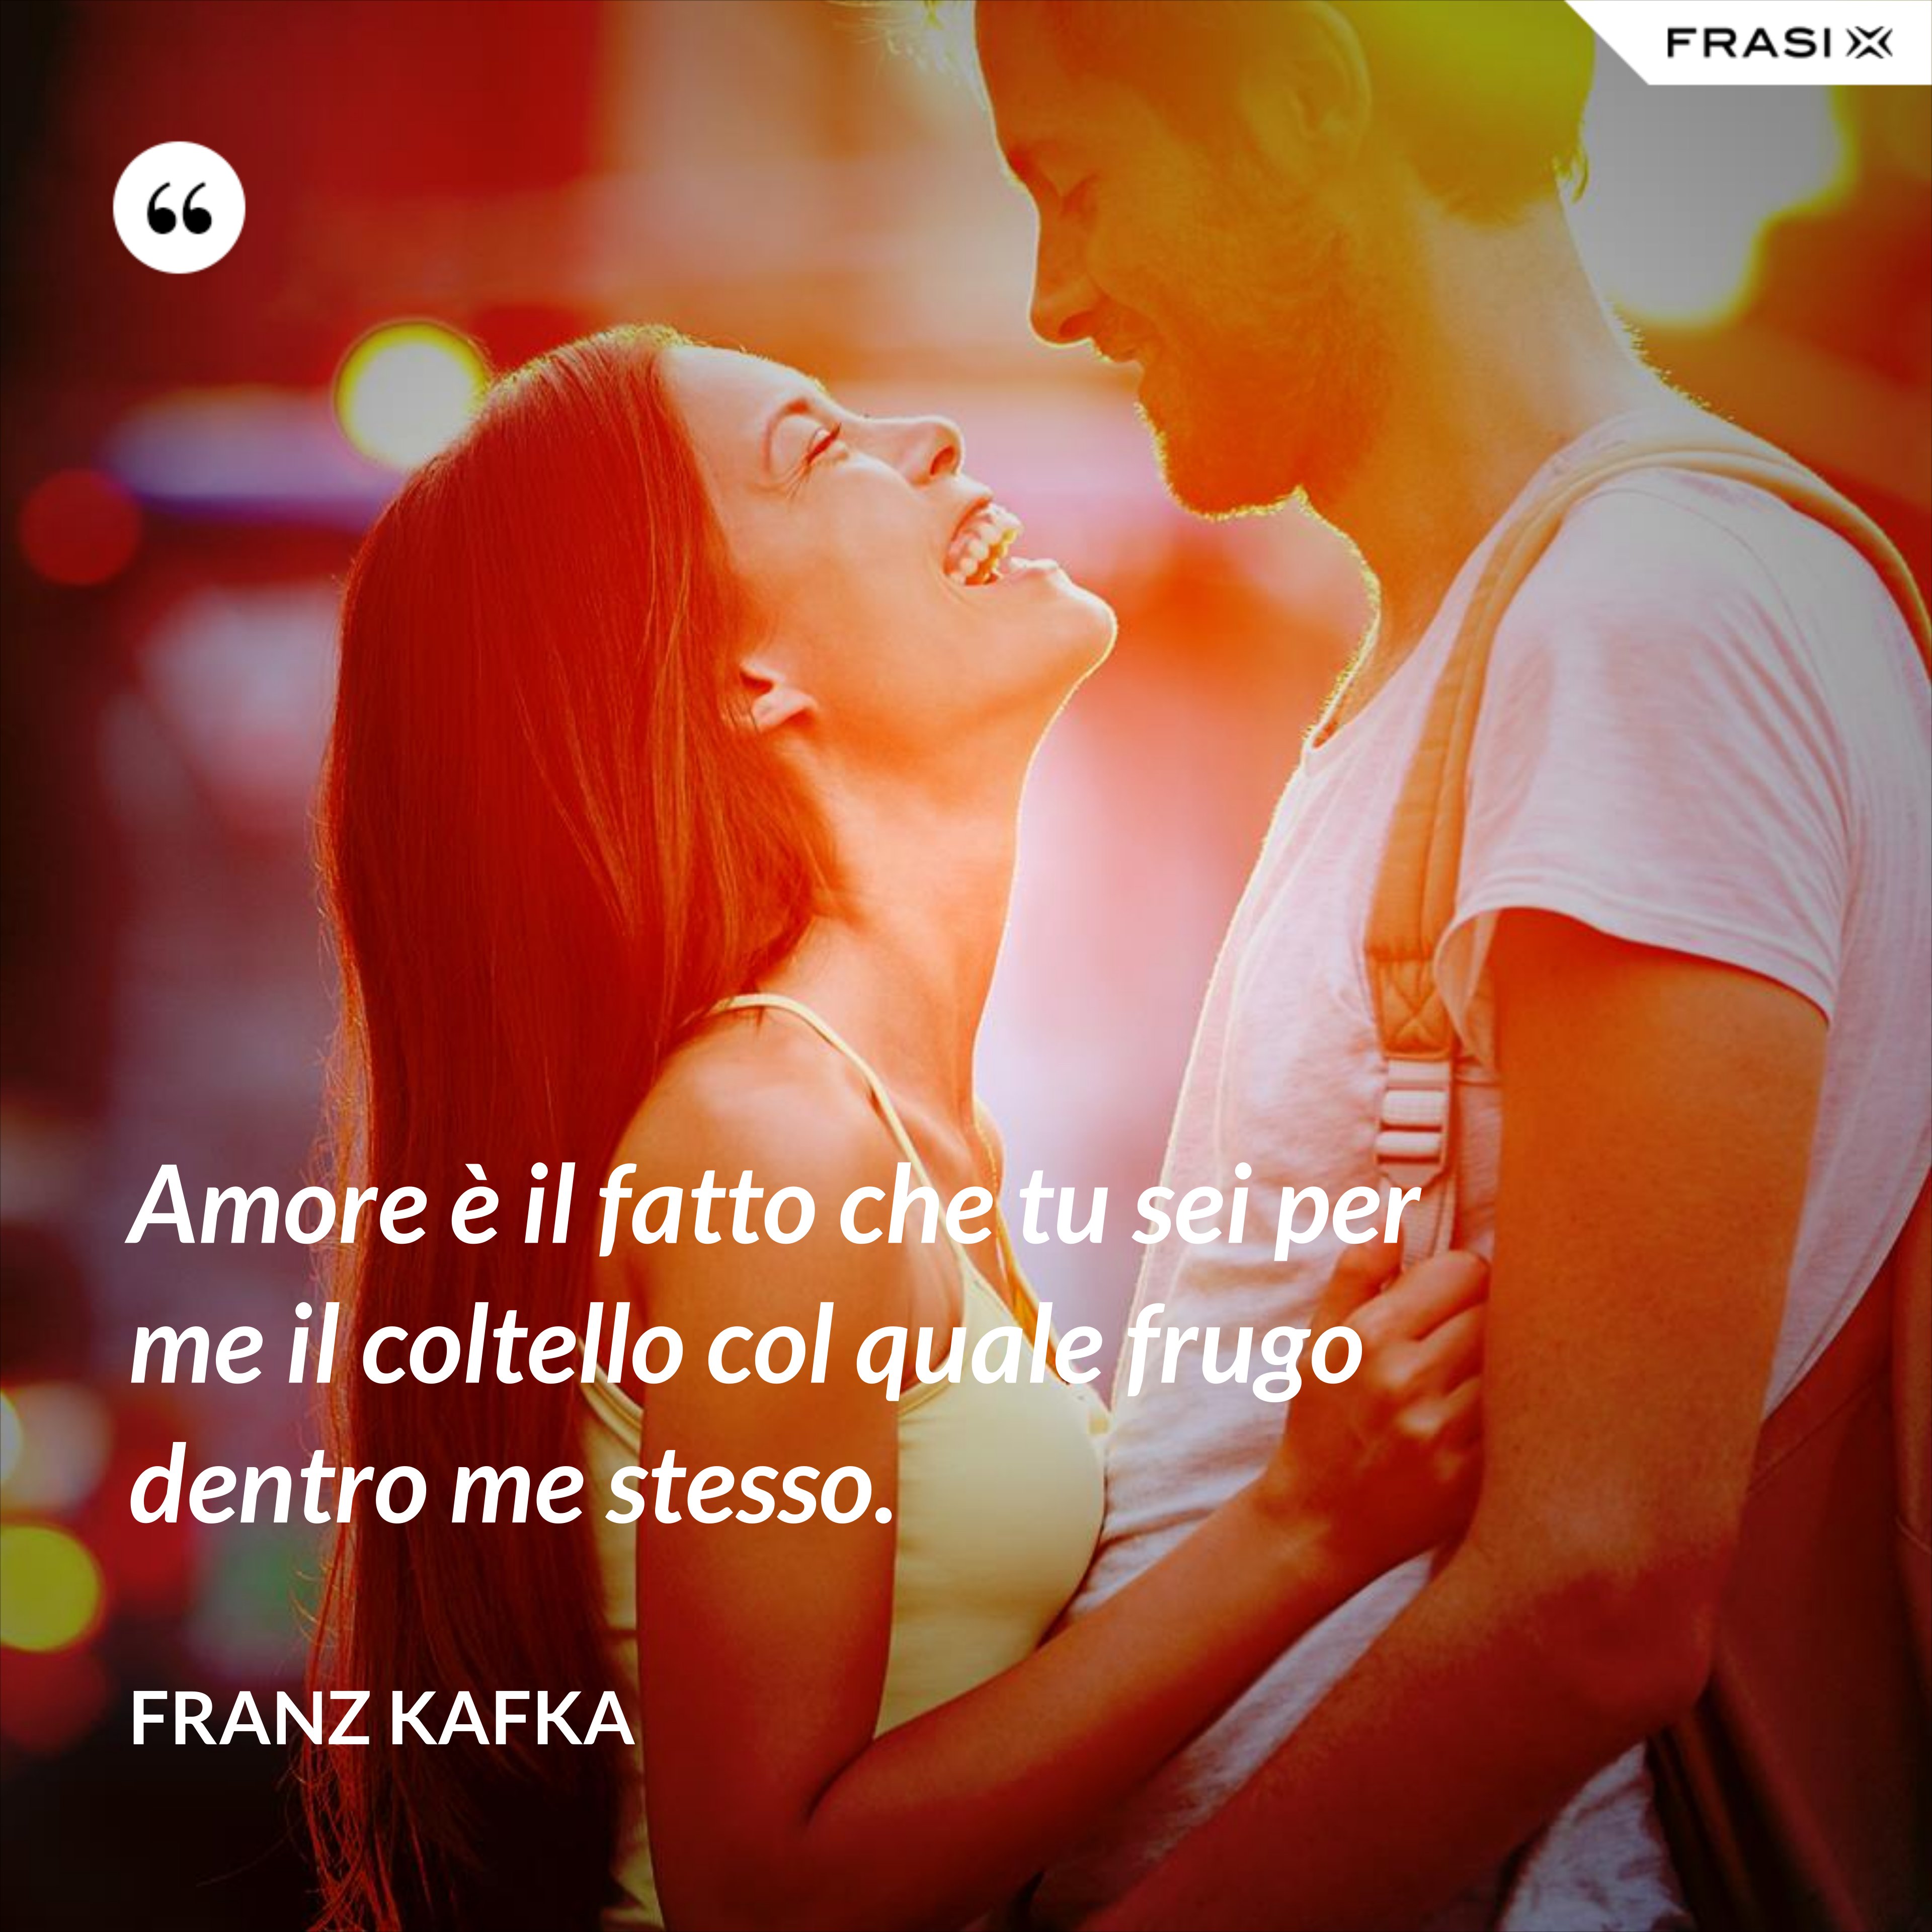 Amore è il fatto che tu sei per me il coltello col quale frugo dentro me stesso. - Franz Kafka